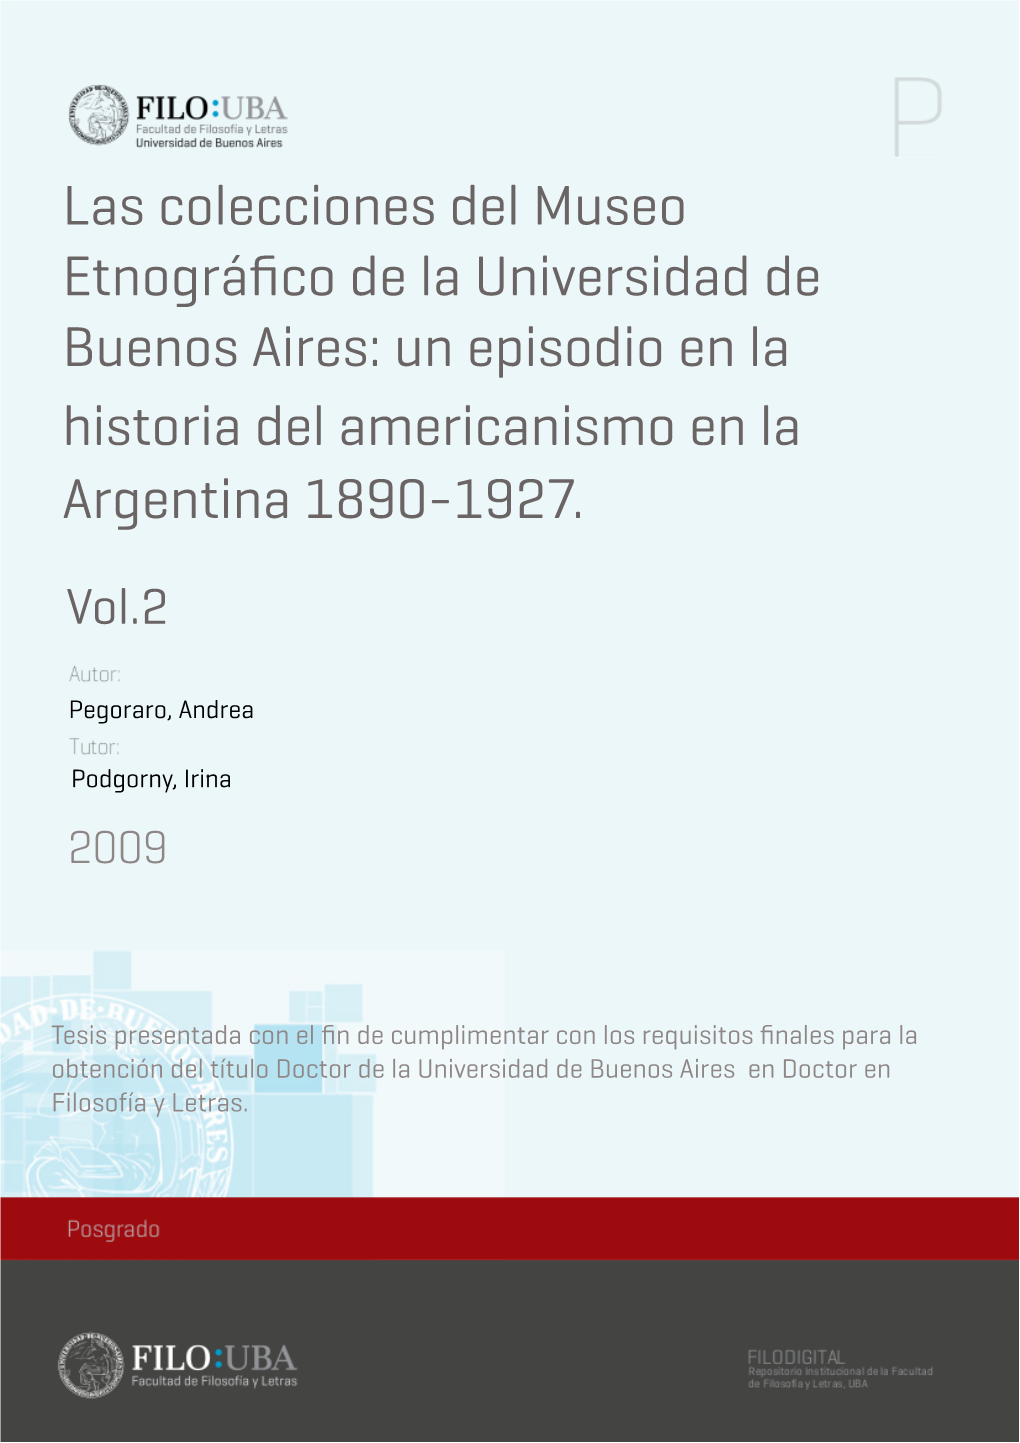 Las Colecciones Del Museo Etnográfico De La Universidad De Buenos Aires: Un Episodio En La Historia Del Americanismo En La Argentina 1890-1927